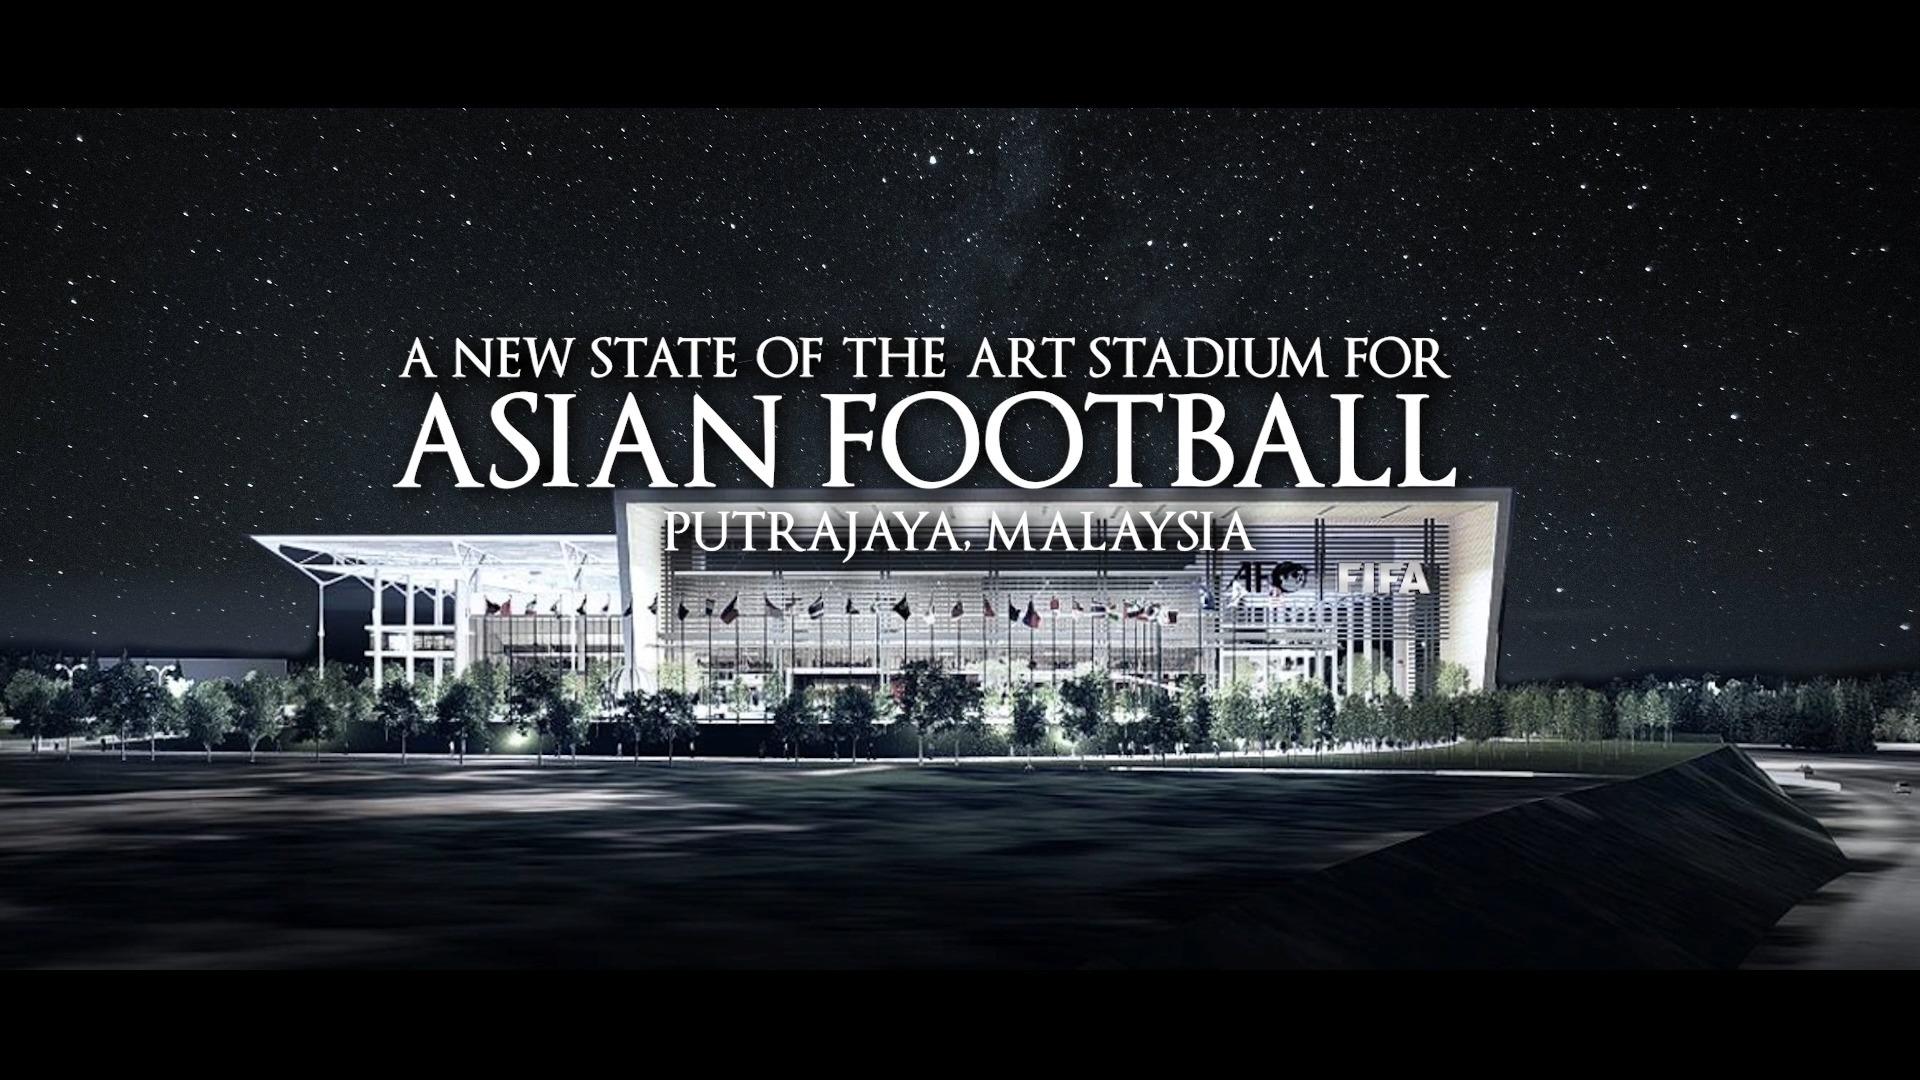 ستاد لكرة القدم الآسيوية بالتعاون بين الاتحادين الآسيوي والدولي لكرة القدم